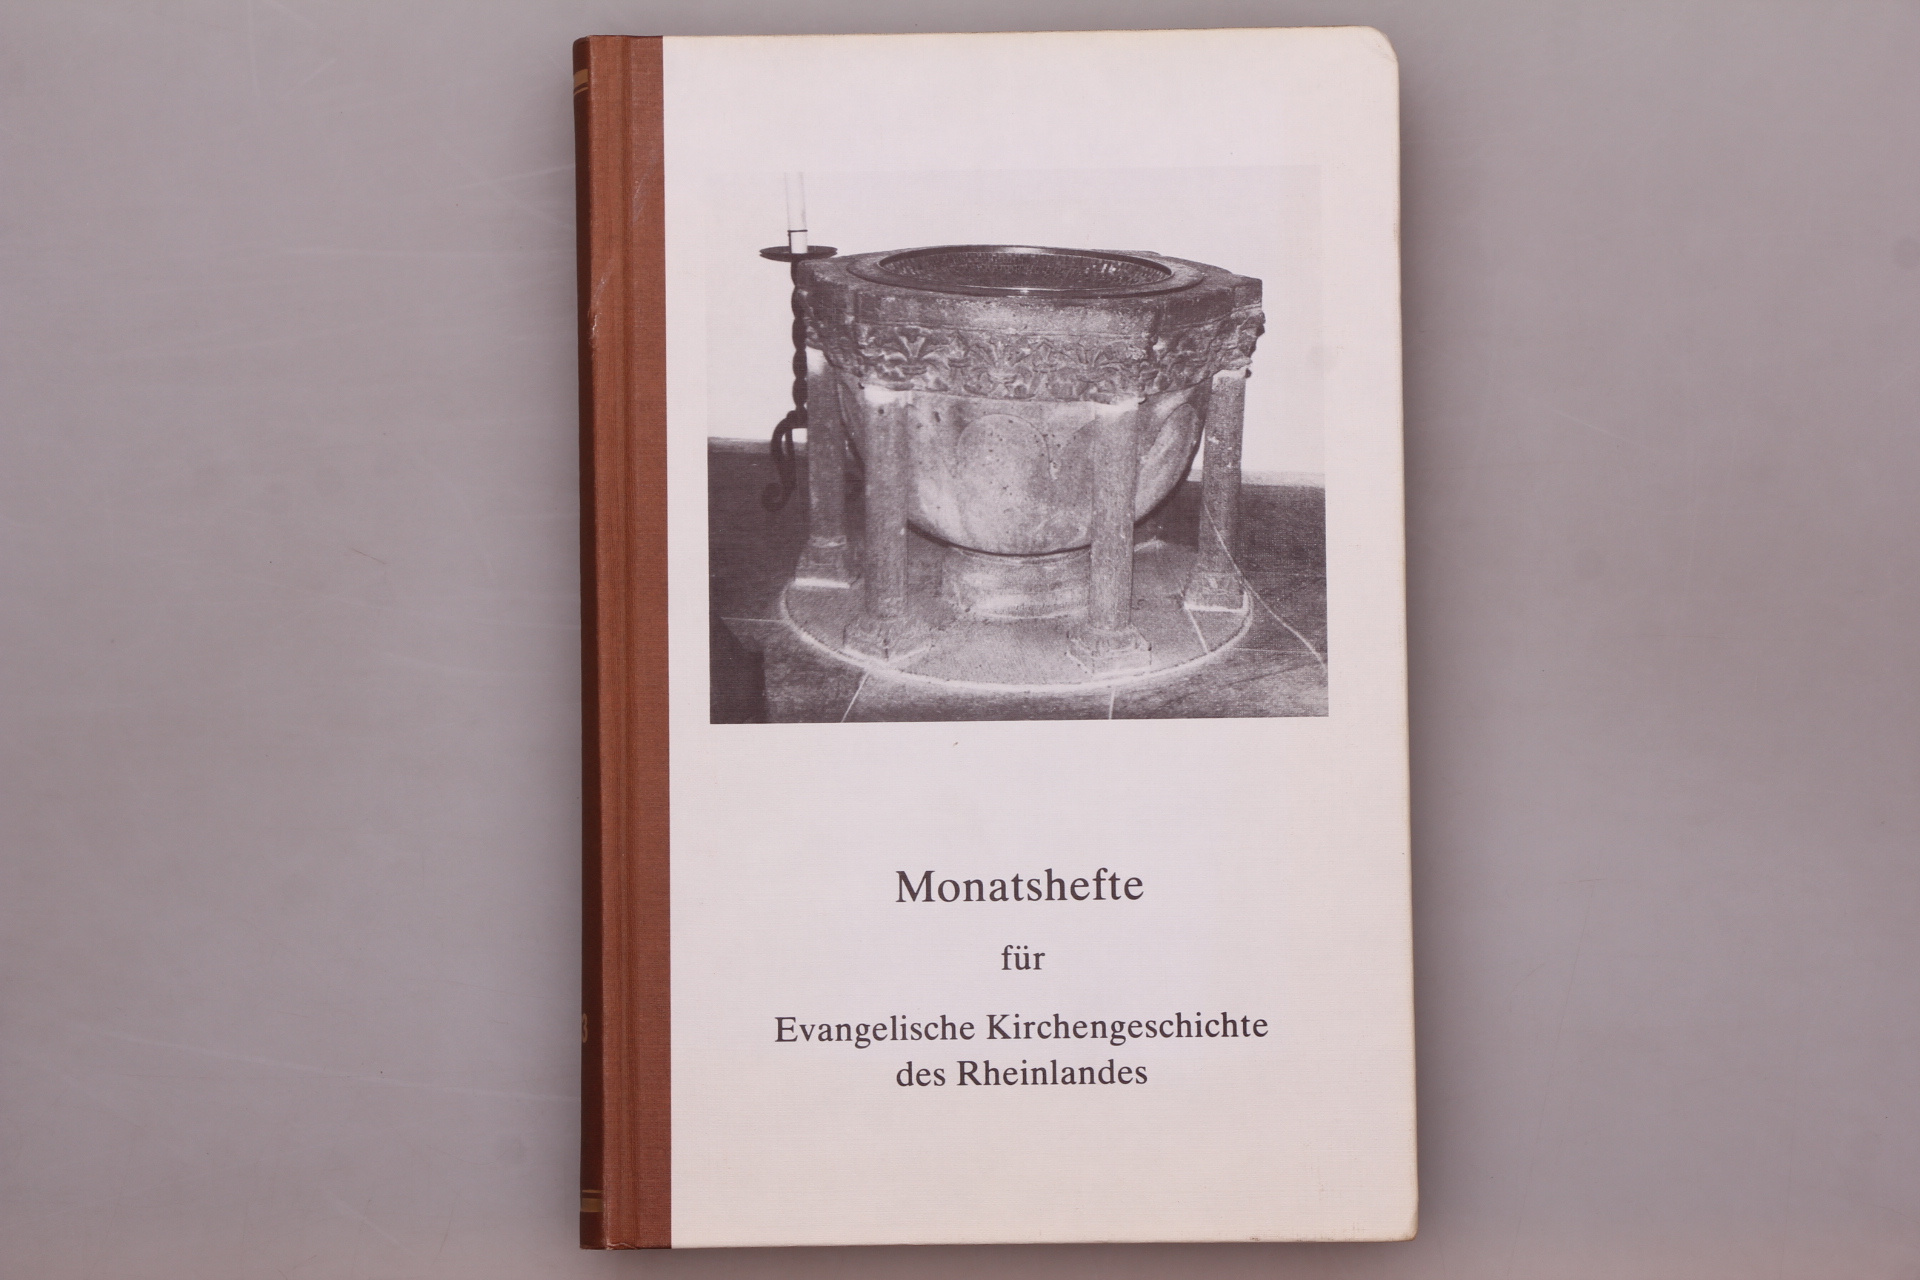 MONATSHEFTE FÜR EVANGELISCHE KIRCHENGESCHICHTE DES RHEINLANDES 32. JAHRGANG 1983. - [Hrsg.]: Verein für rheinische Kirchengeschichte und die Autoren